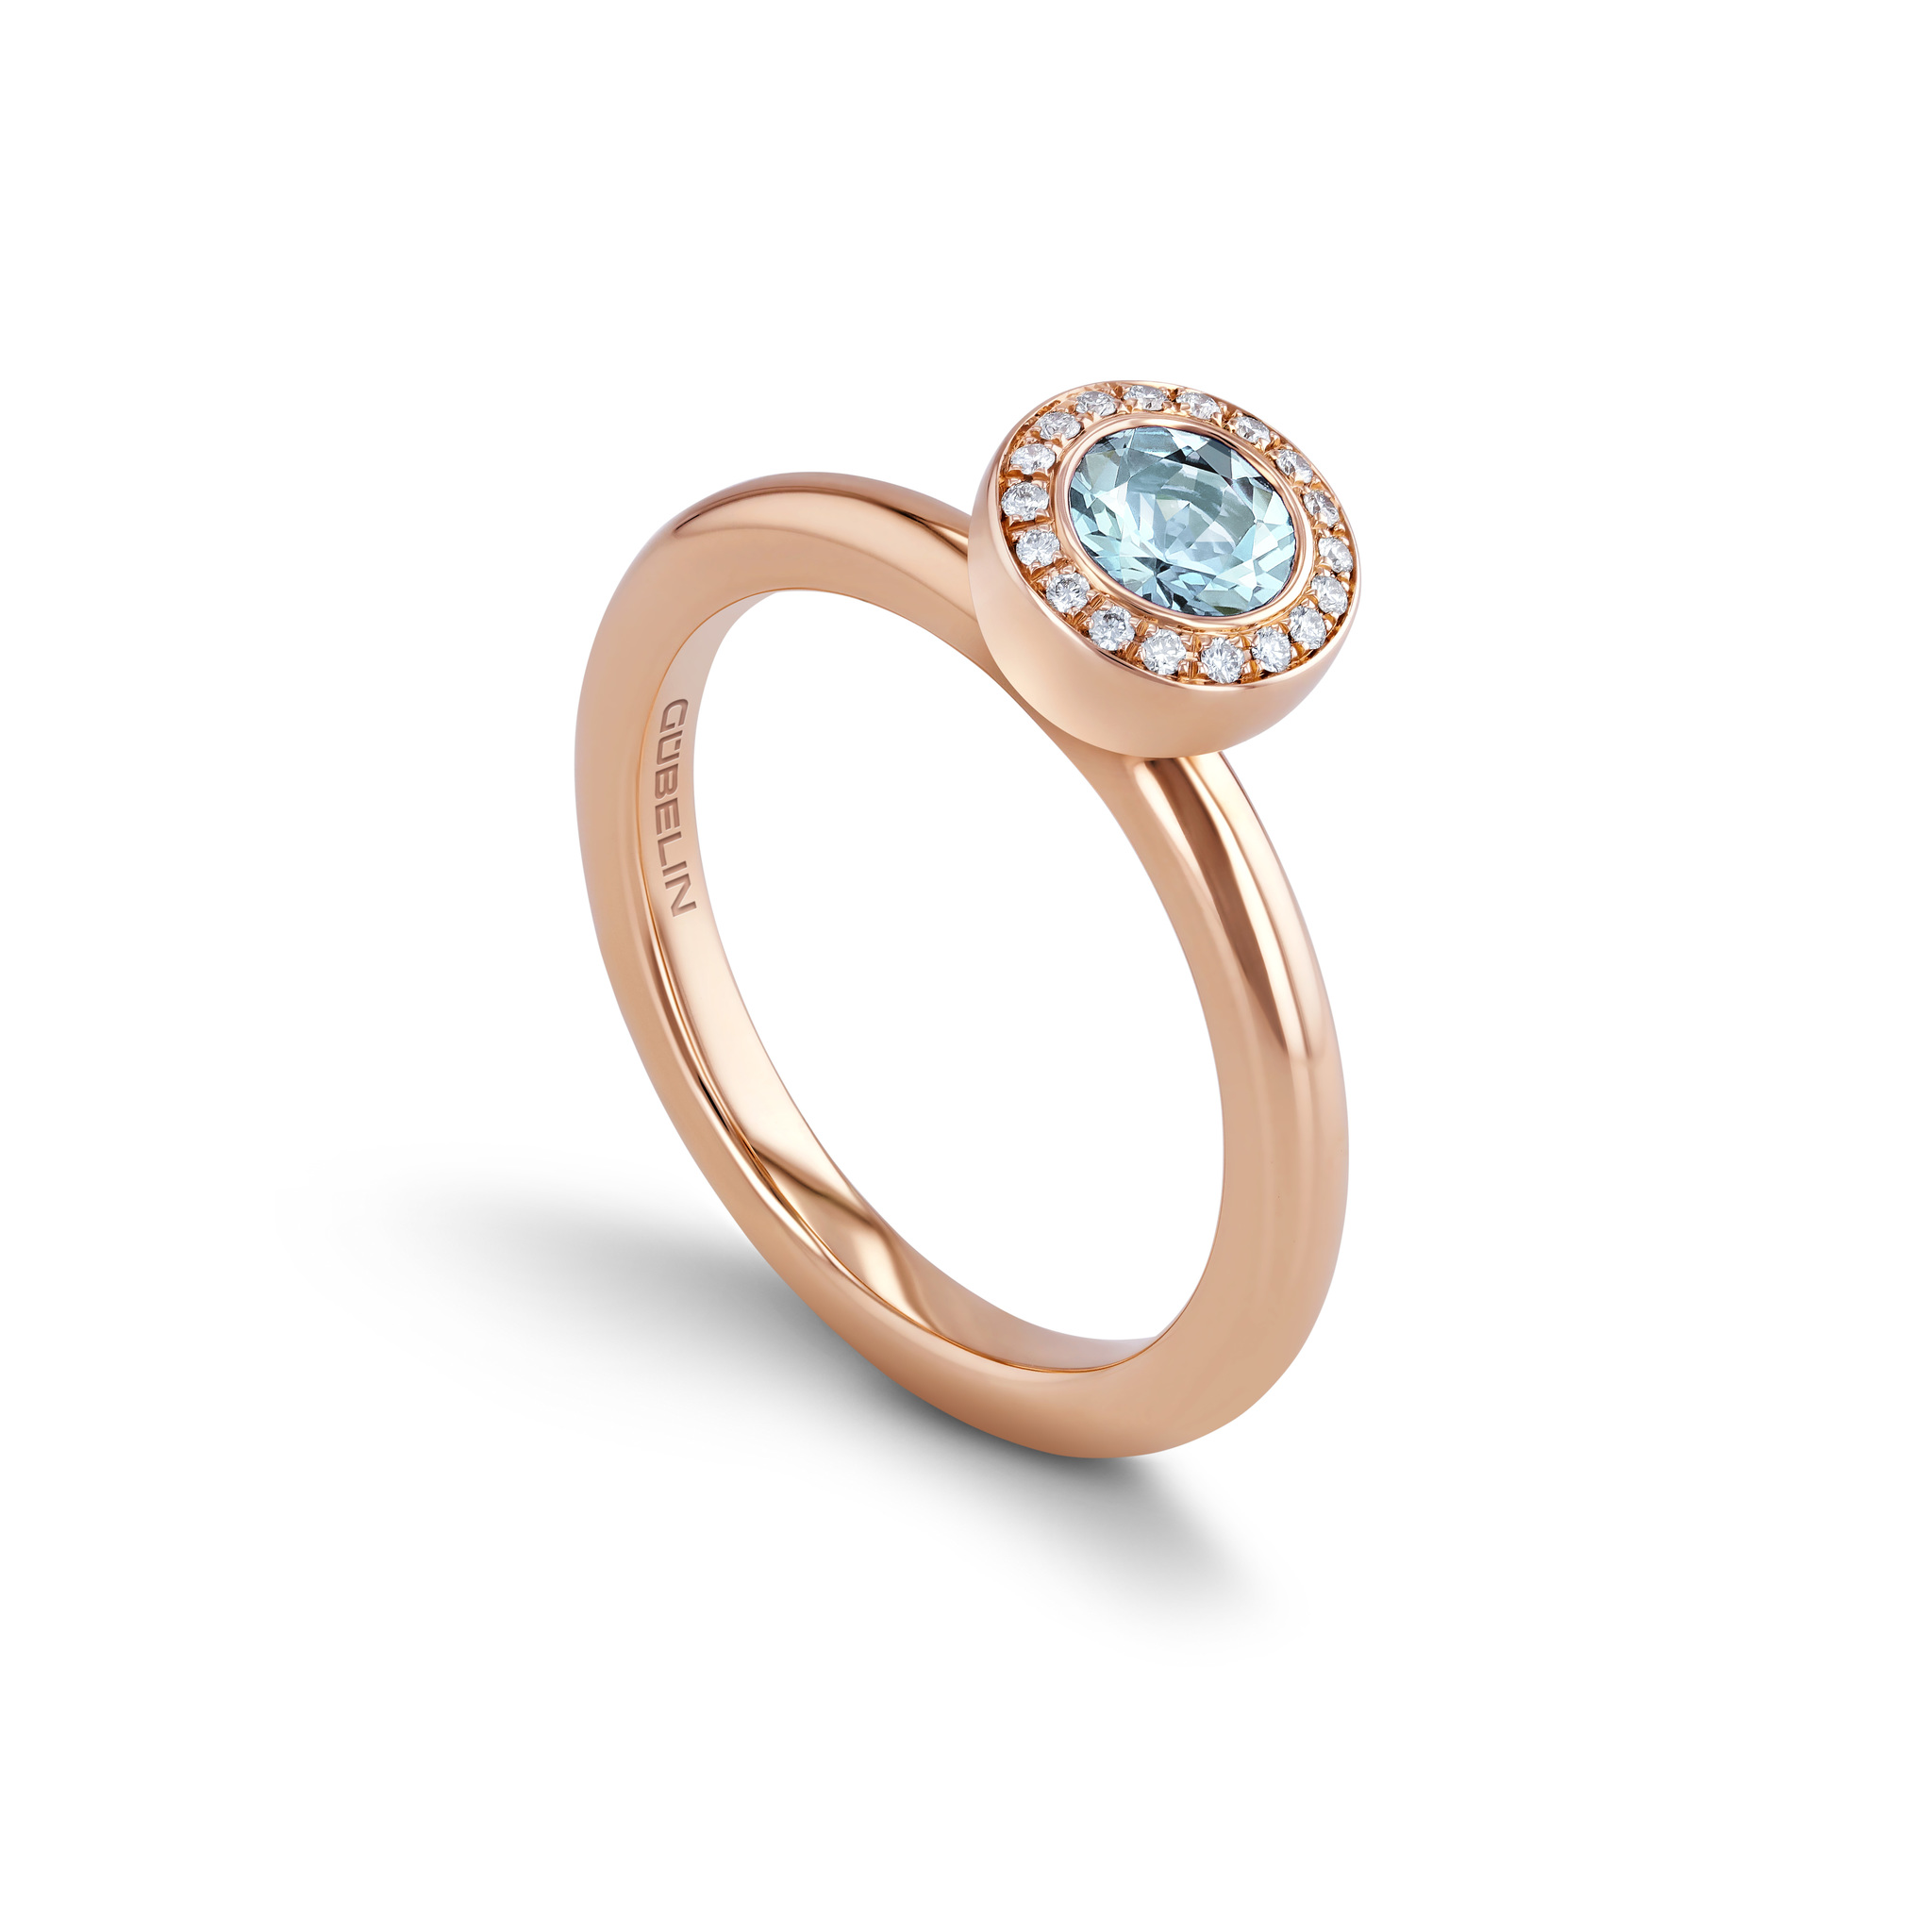 Ring with aquamarine